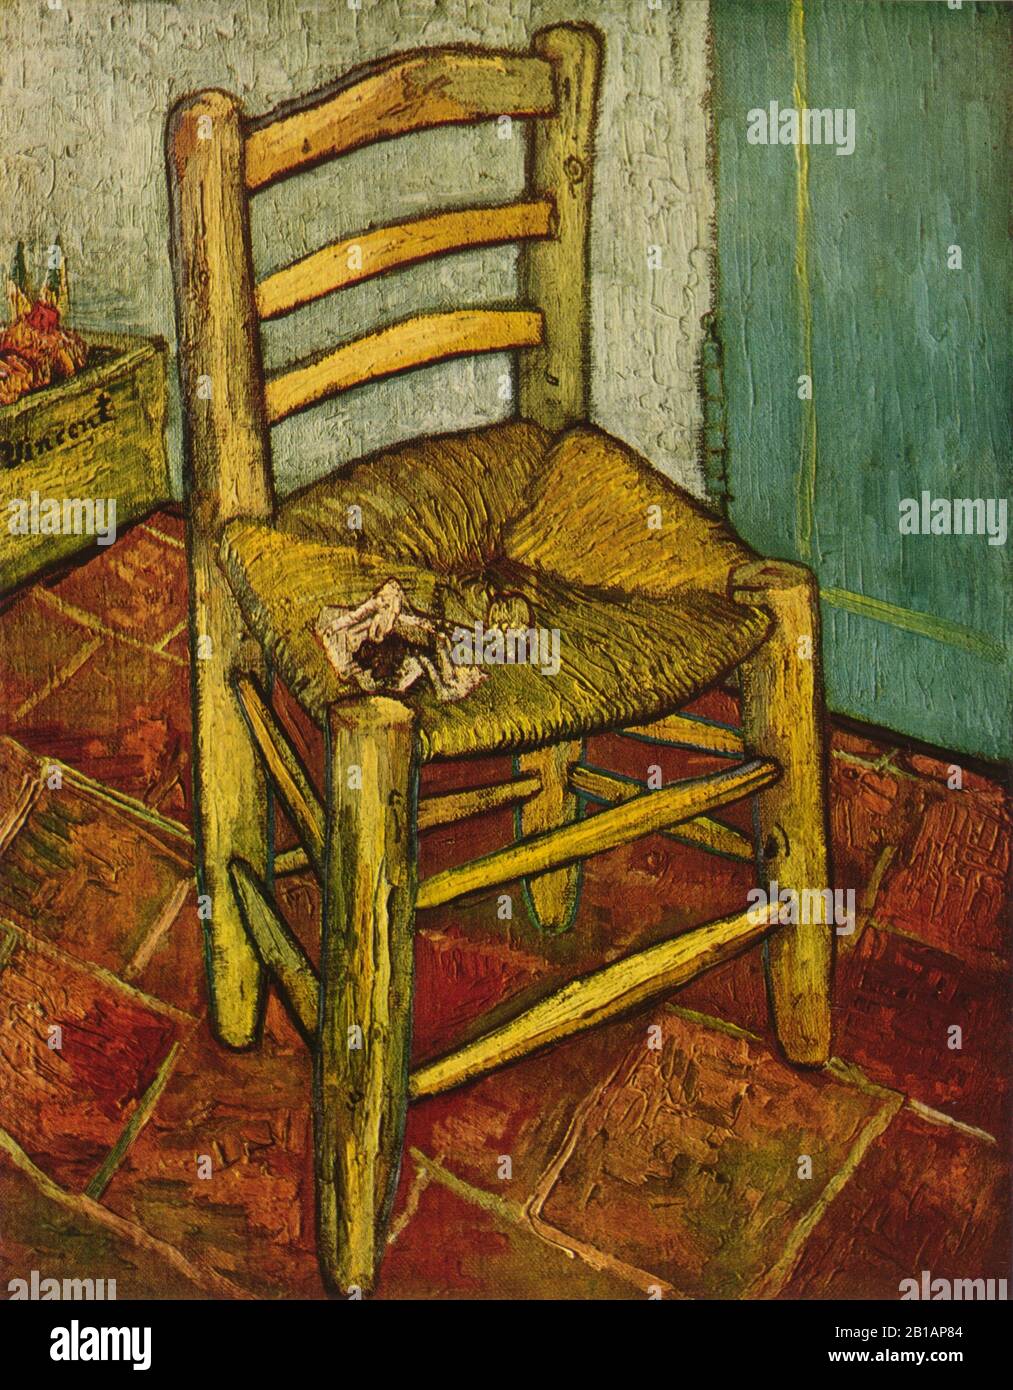 Van Gogh's Chair, das Gemälde von Vincent van Gogh, wurde im Jahre 1889 mit sehr hoher Auflösung und hoher Bildqualität aufgenommen Stockfoto